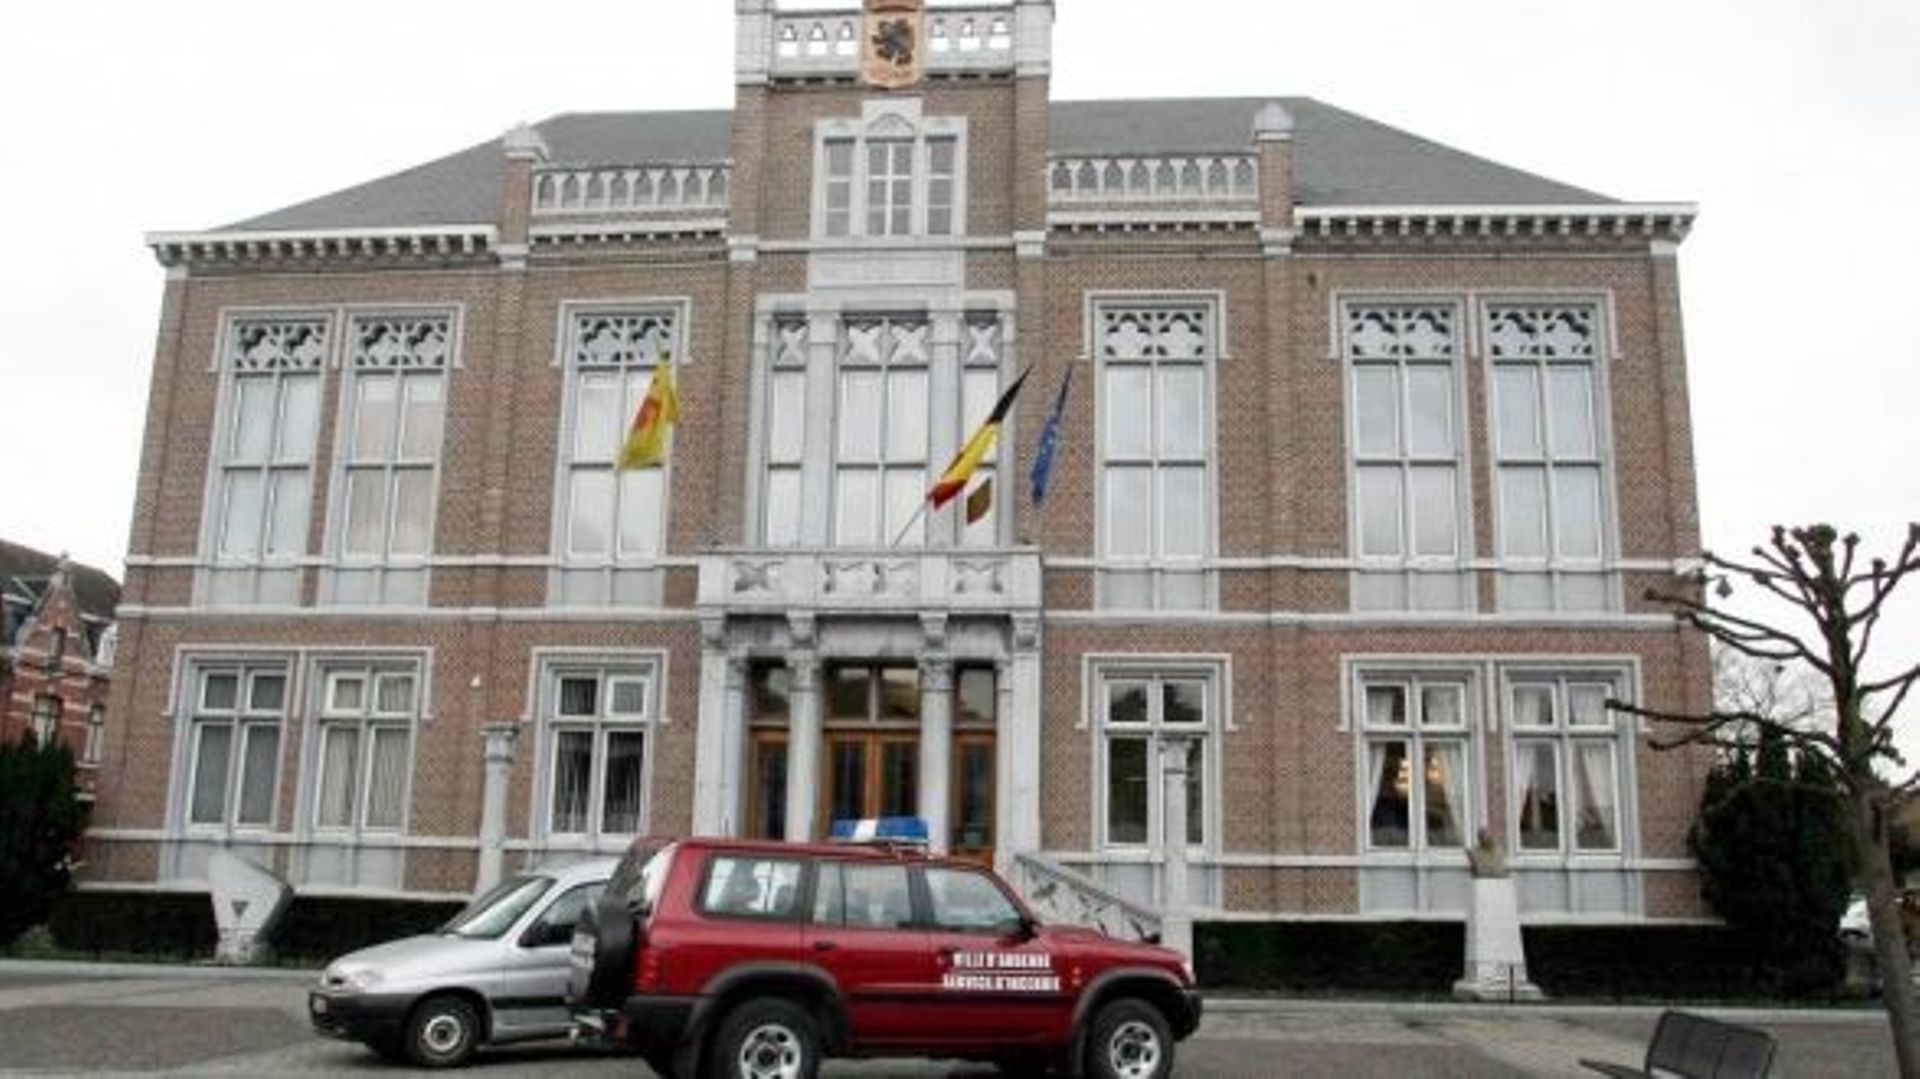 La ville d’Andenne a demandé l’intervention du plan "Oxygène" de la Région Wallonne